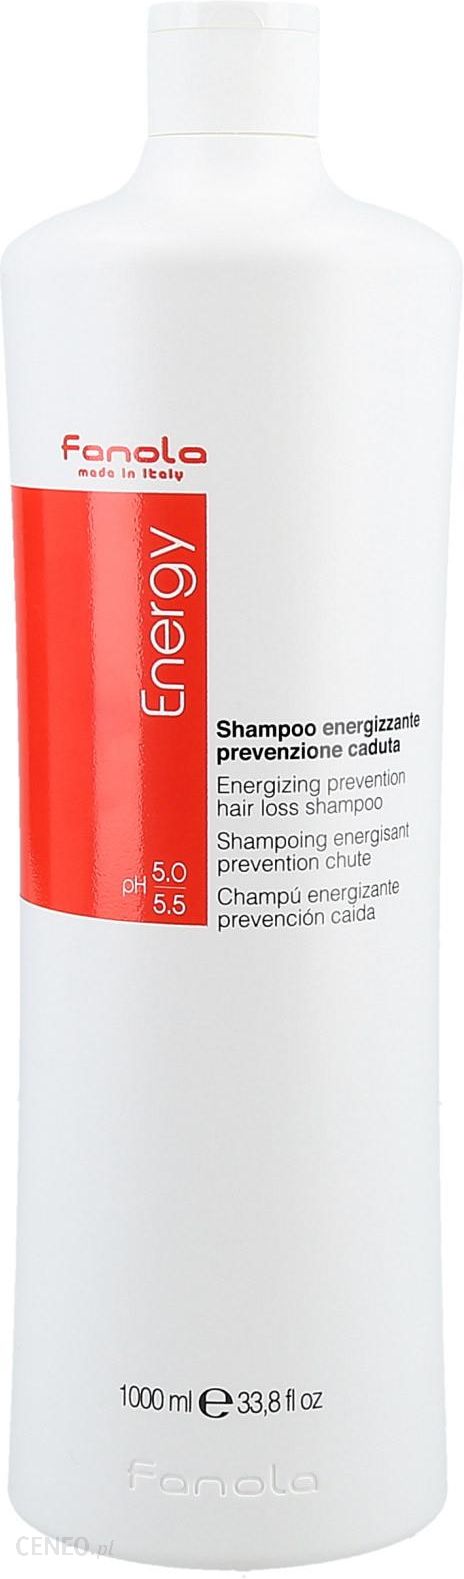 fanola energy szampon przeciw wypadaniu włosów opinie